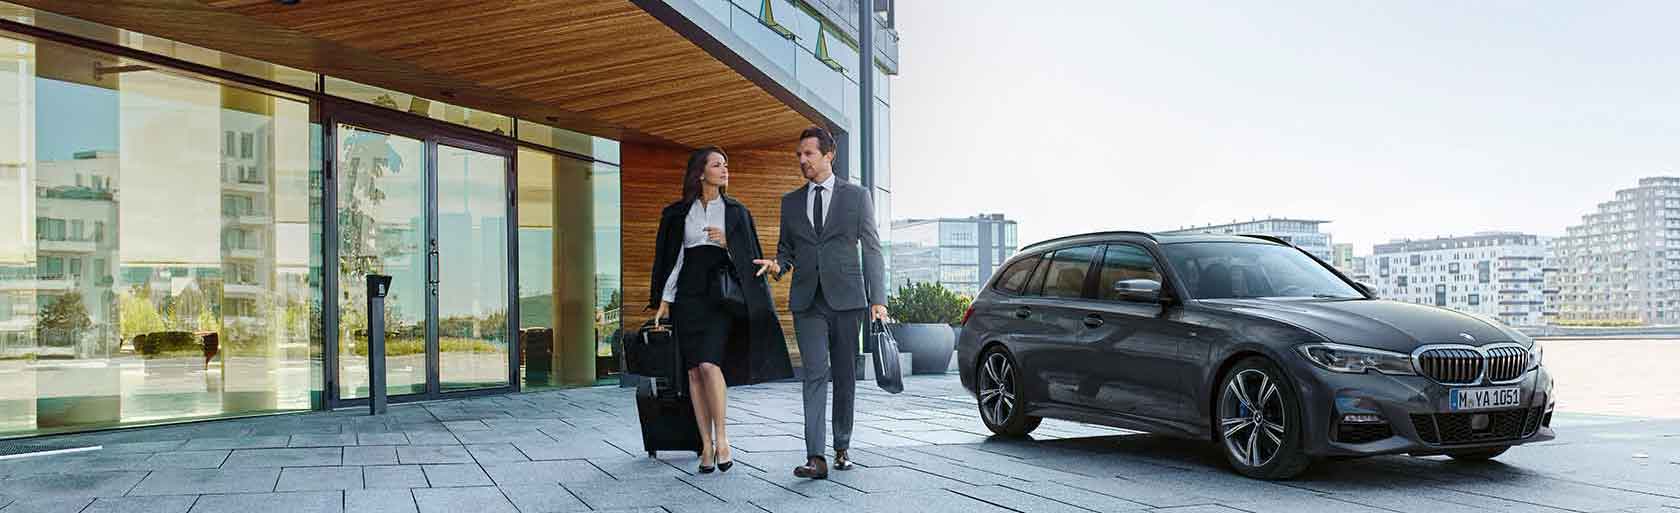 Junge Frau und Partner fahren auf Business-Trip mit dem BMW Abo.